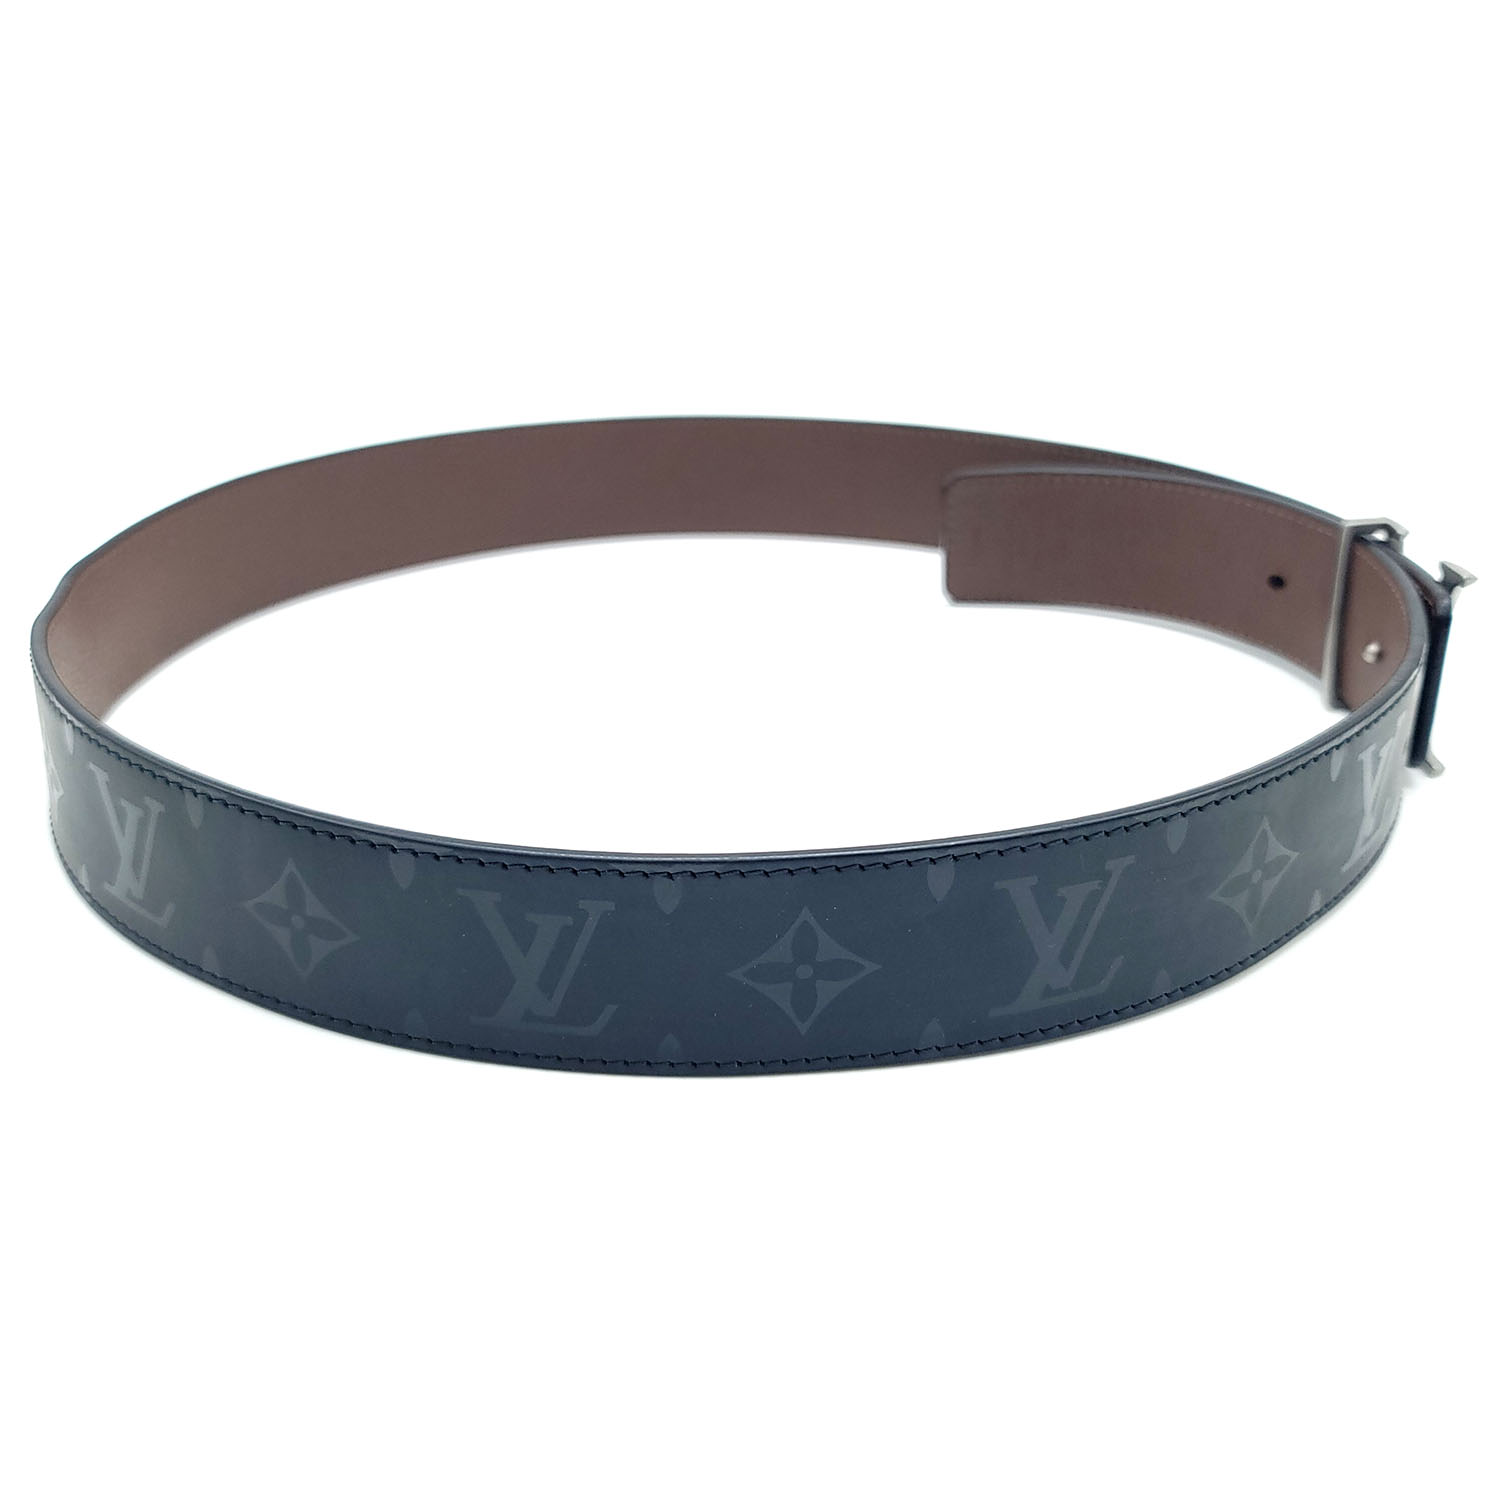 Louis Vuitton Monogram Canvas 40mm Reversible Belt - Size 90